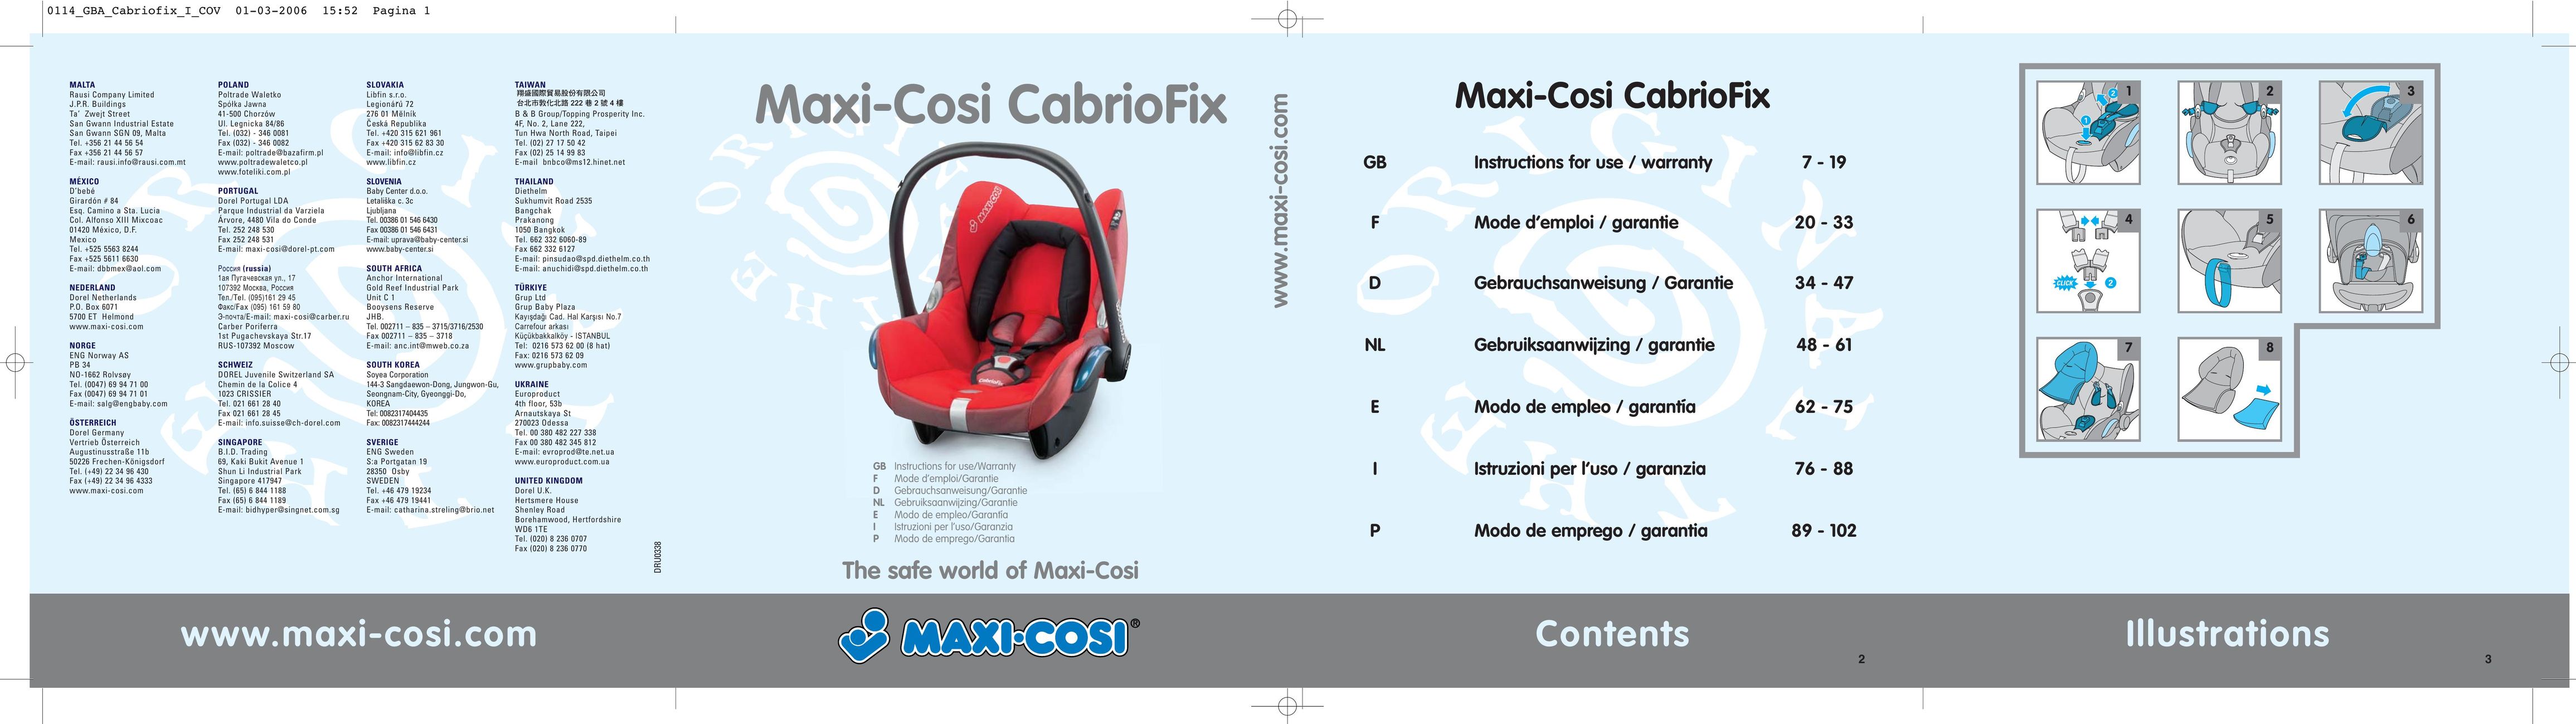 Maxi-Cosi THE SAFE WORLD OF I Car Seat User Manual